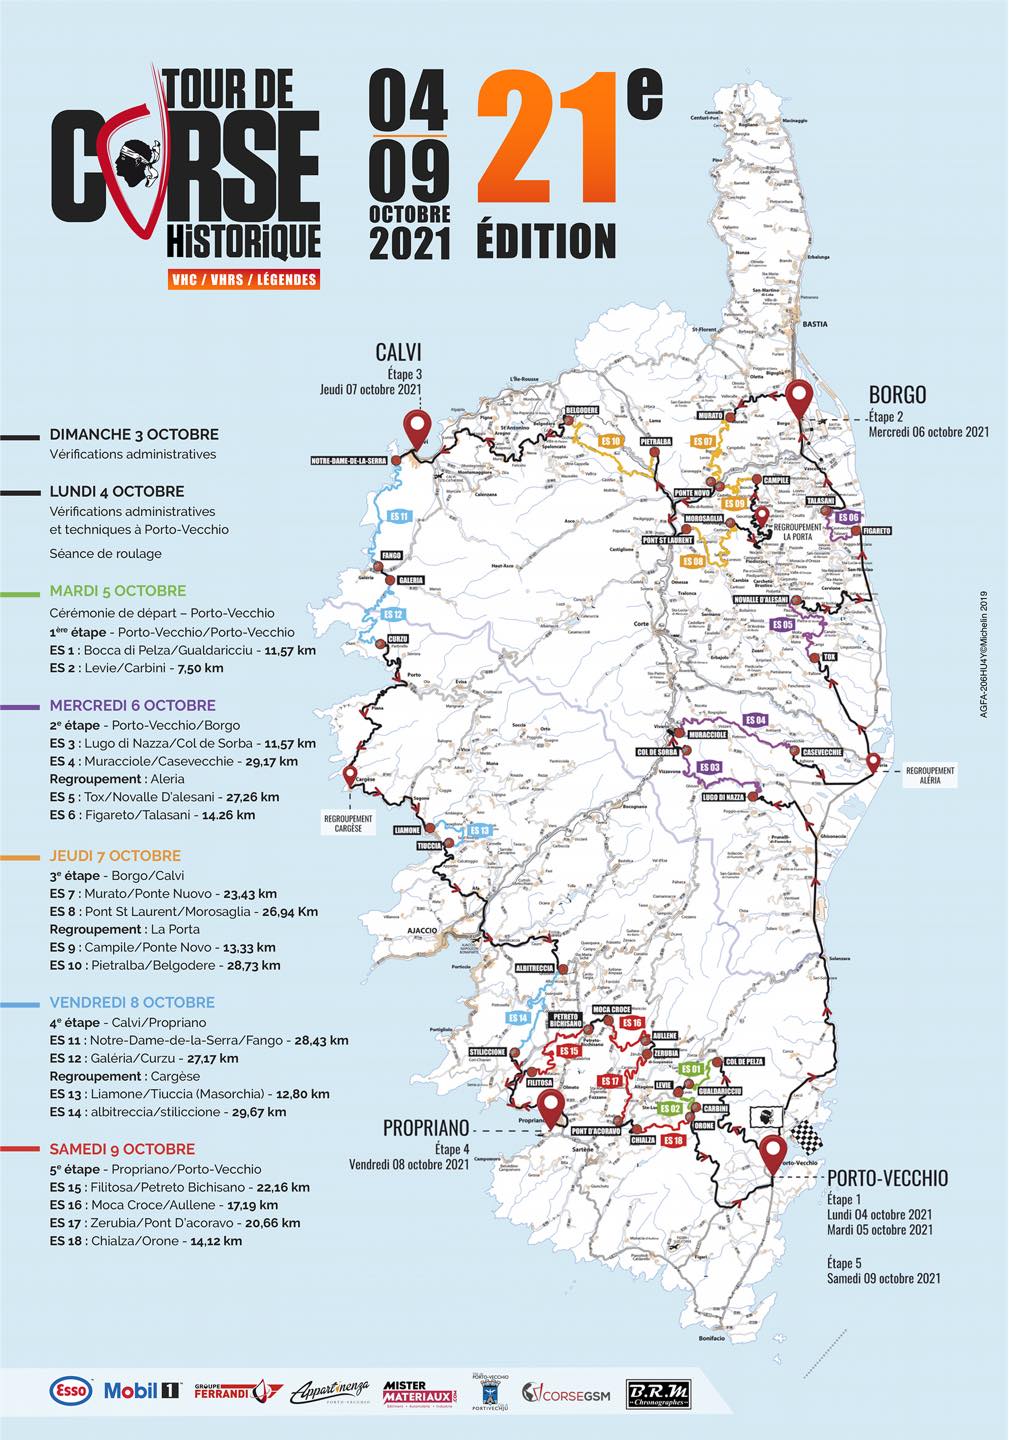 road book tour de corse historique 2022